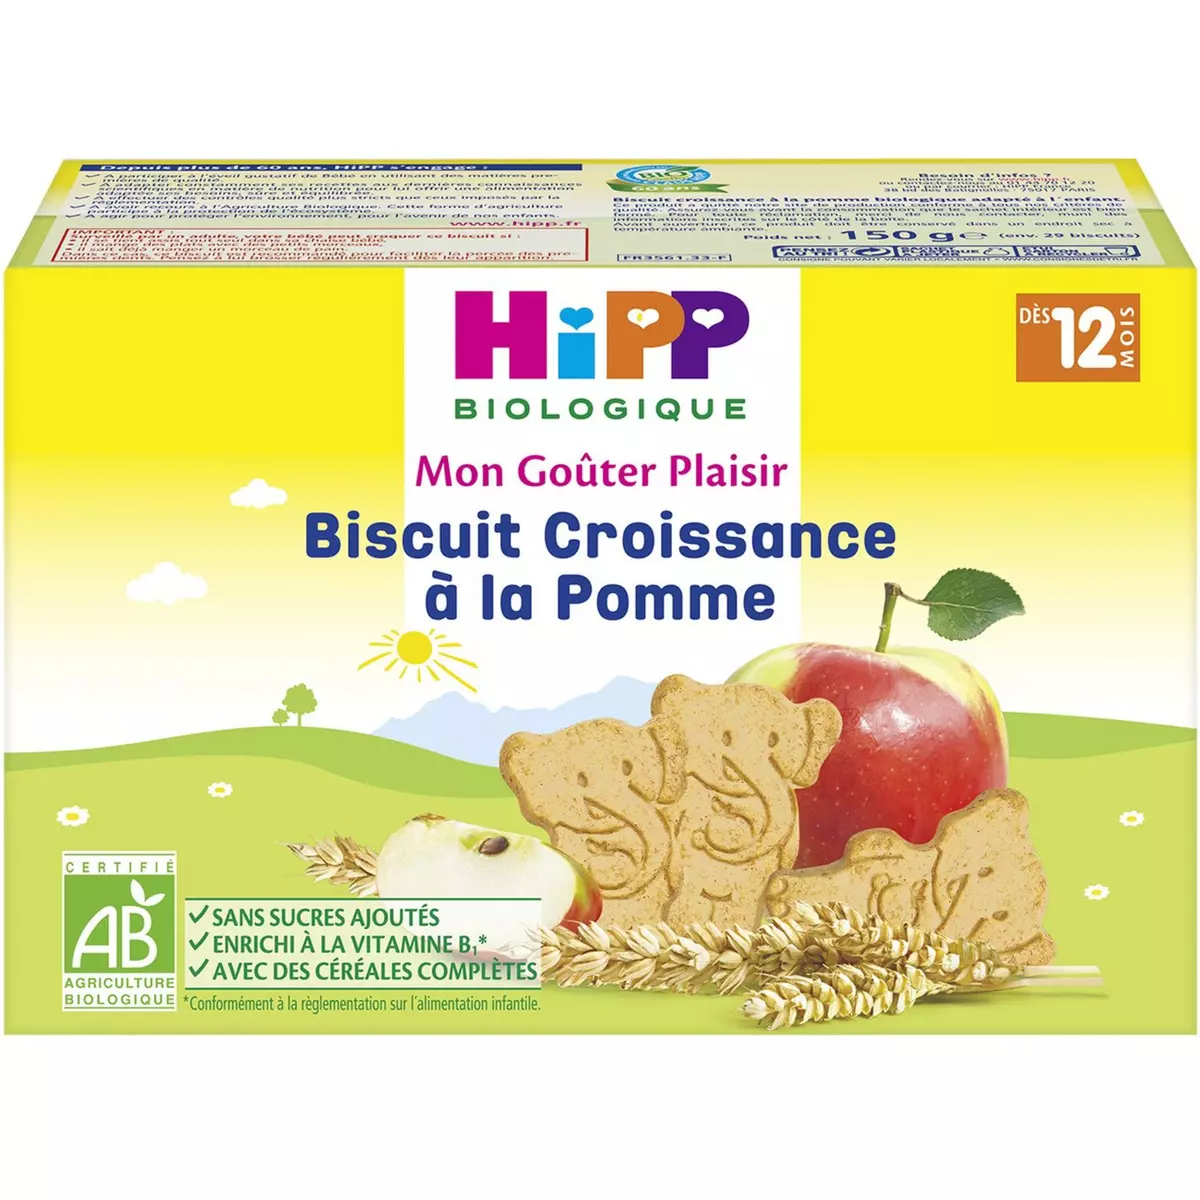 HIPP Mon goûter plaisir Biscuits croissance à la pomme bio dès 12 mois 150g